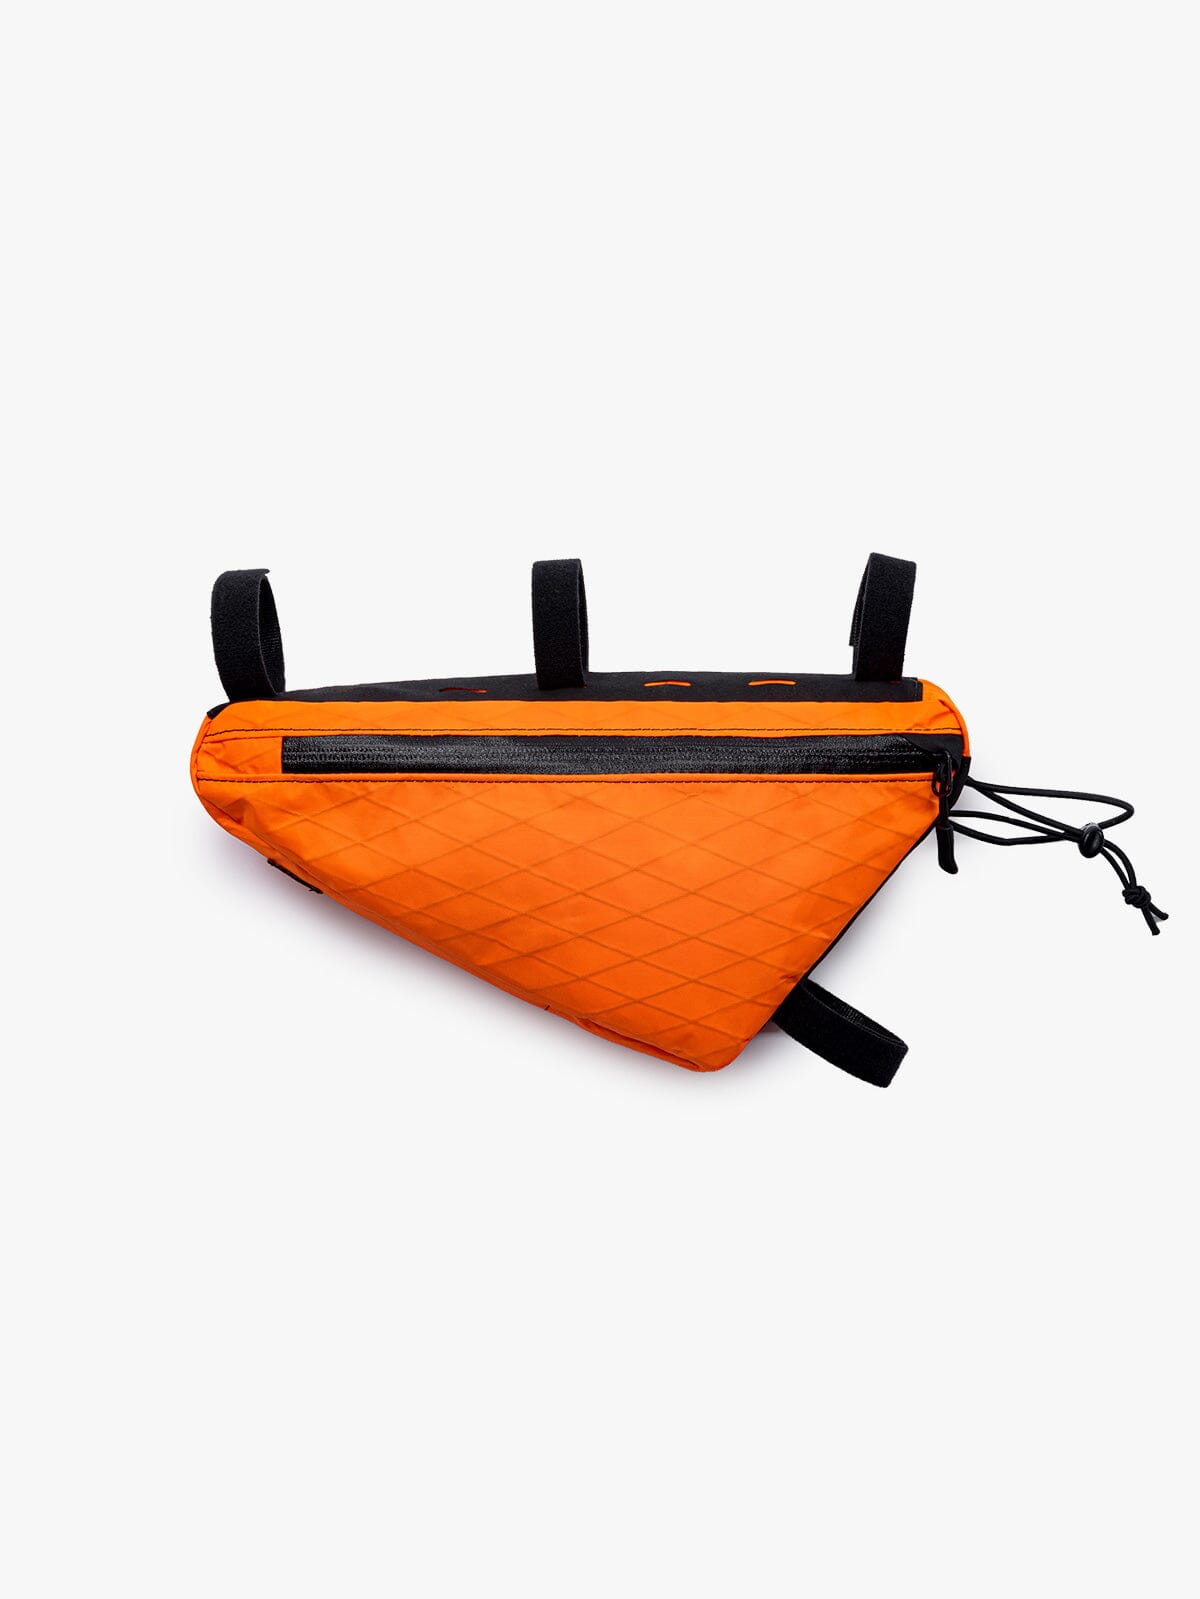 Slice Frame Bag von Mission Workshop - Wetterfeste Taschen & Technische Bekleidung - San Francisco & Los Angeles - Für die Ewigkeit gebaut - Garantiert